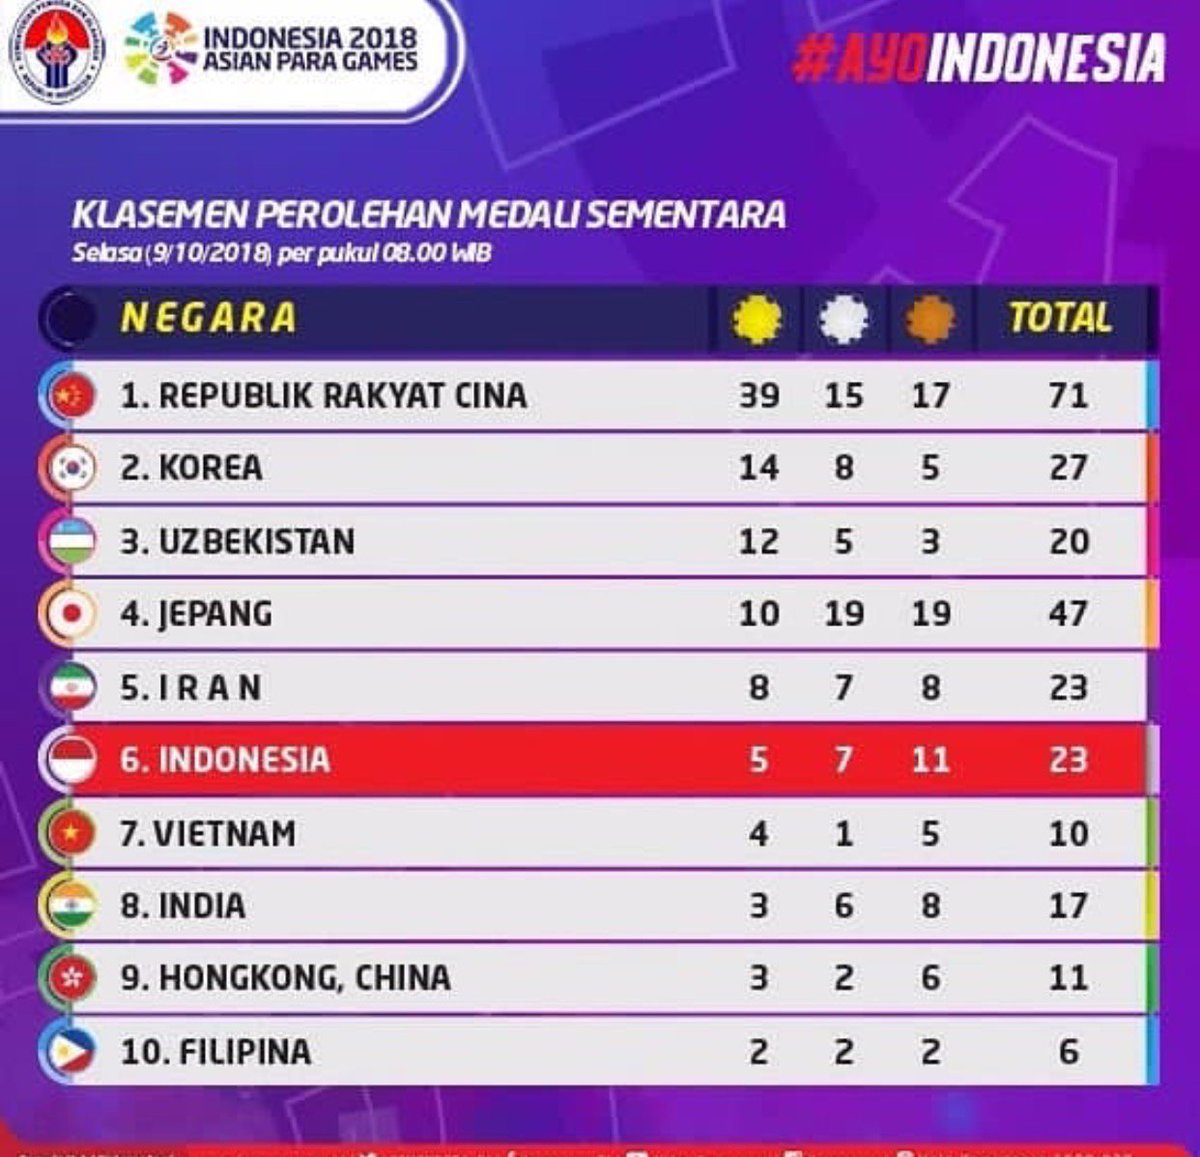 'Kuyakin Perolehan Medali Untuk Indonesia Masih Akan Terus Bertambah.'

Ayo Indonesia Bisa
Ayo Indonesia Juara
#AsianParaGames2018 #ChichaisB4ck #PilihNo4 #AyoIndonesia